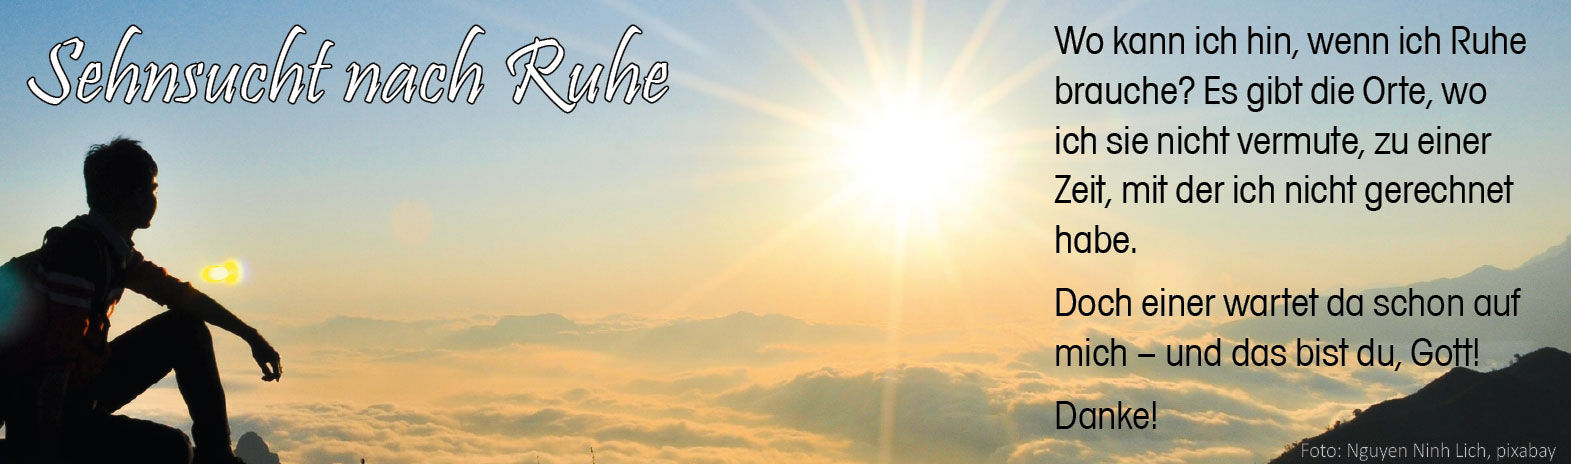 Sehnsucht nach Ruhe (Foto "In der Morgensonne auf dem Gipfel": Nguyen Dinh Lich, pixabay)